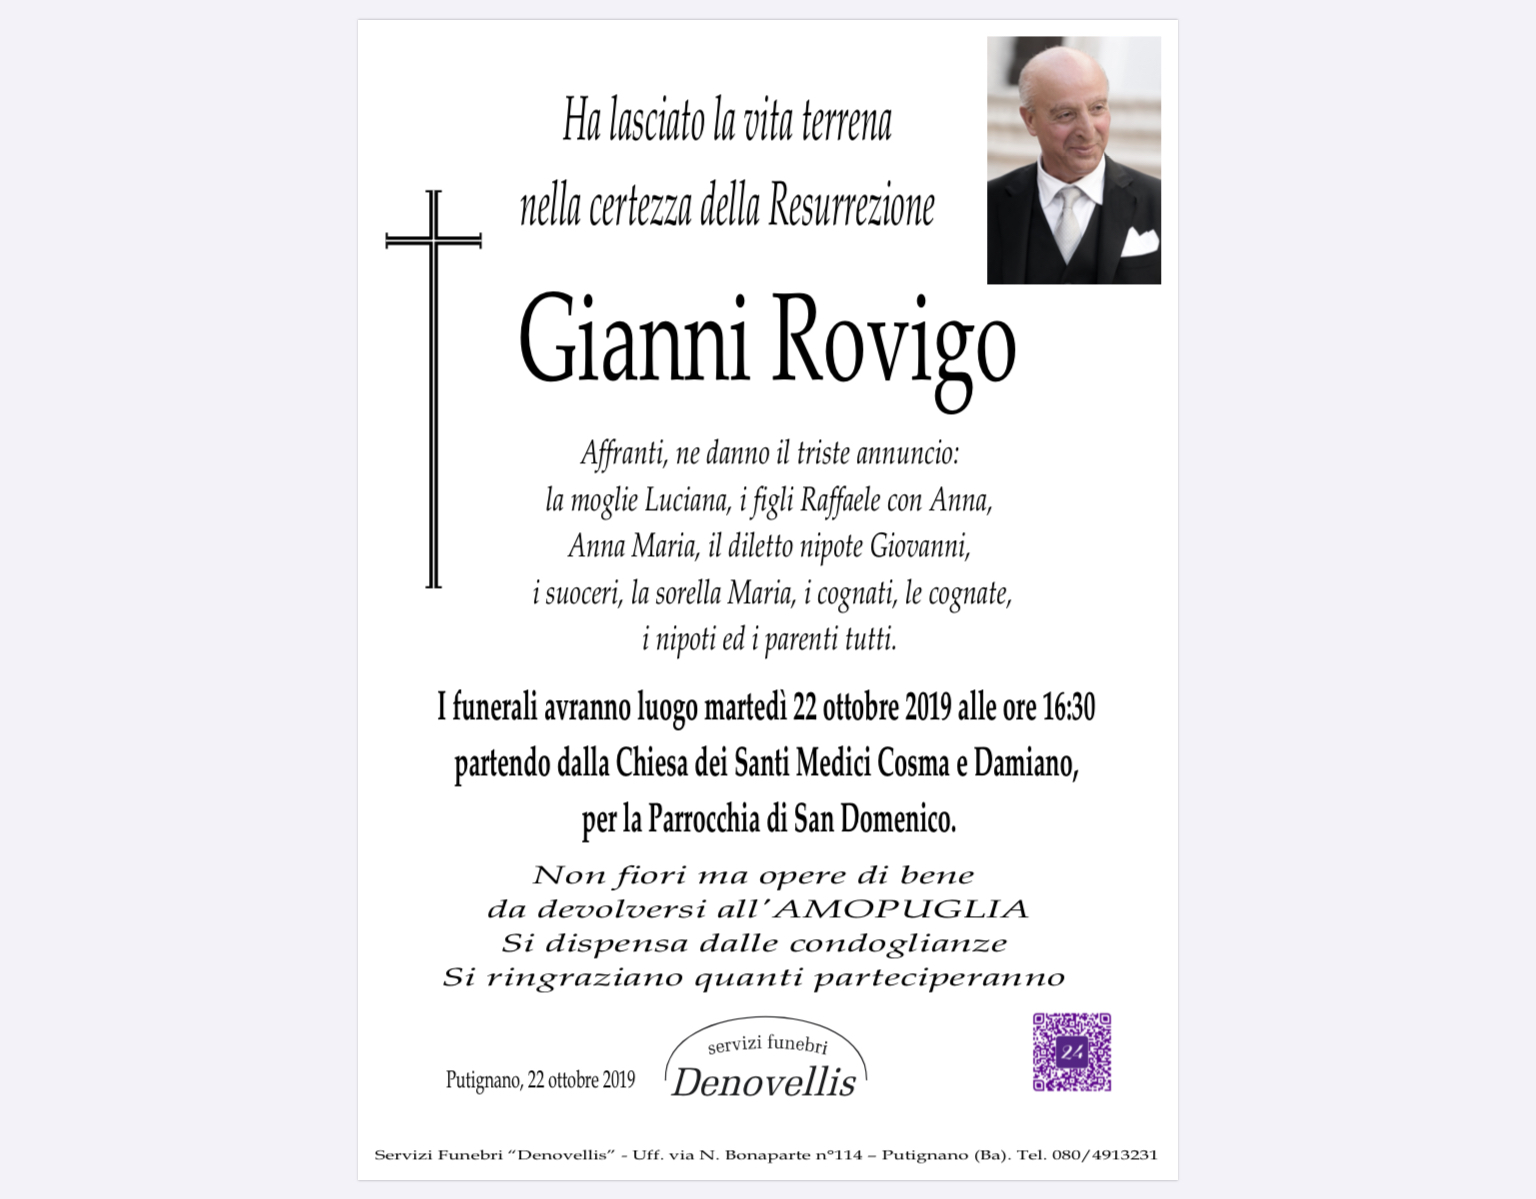 Giovanni Rovigo